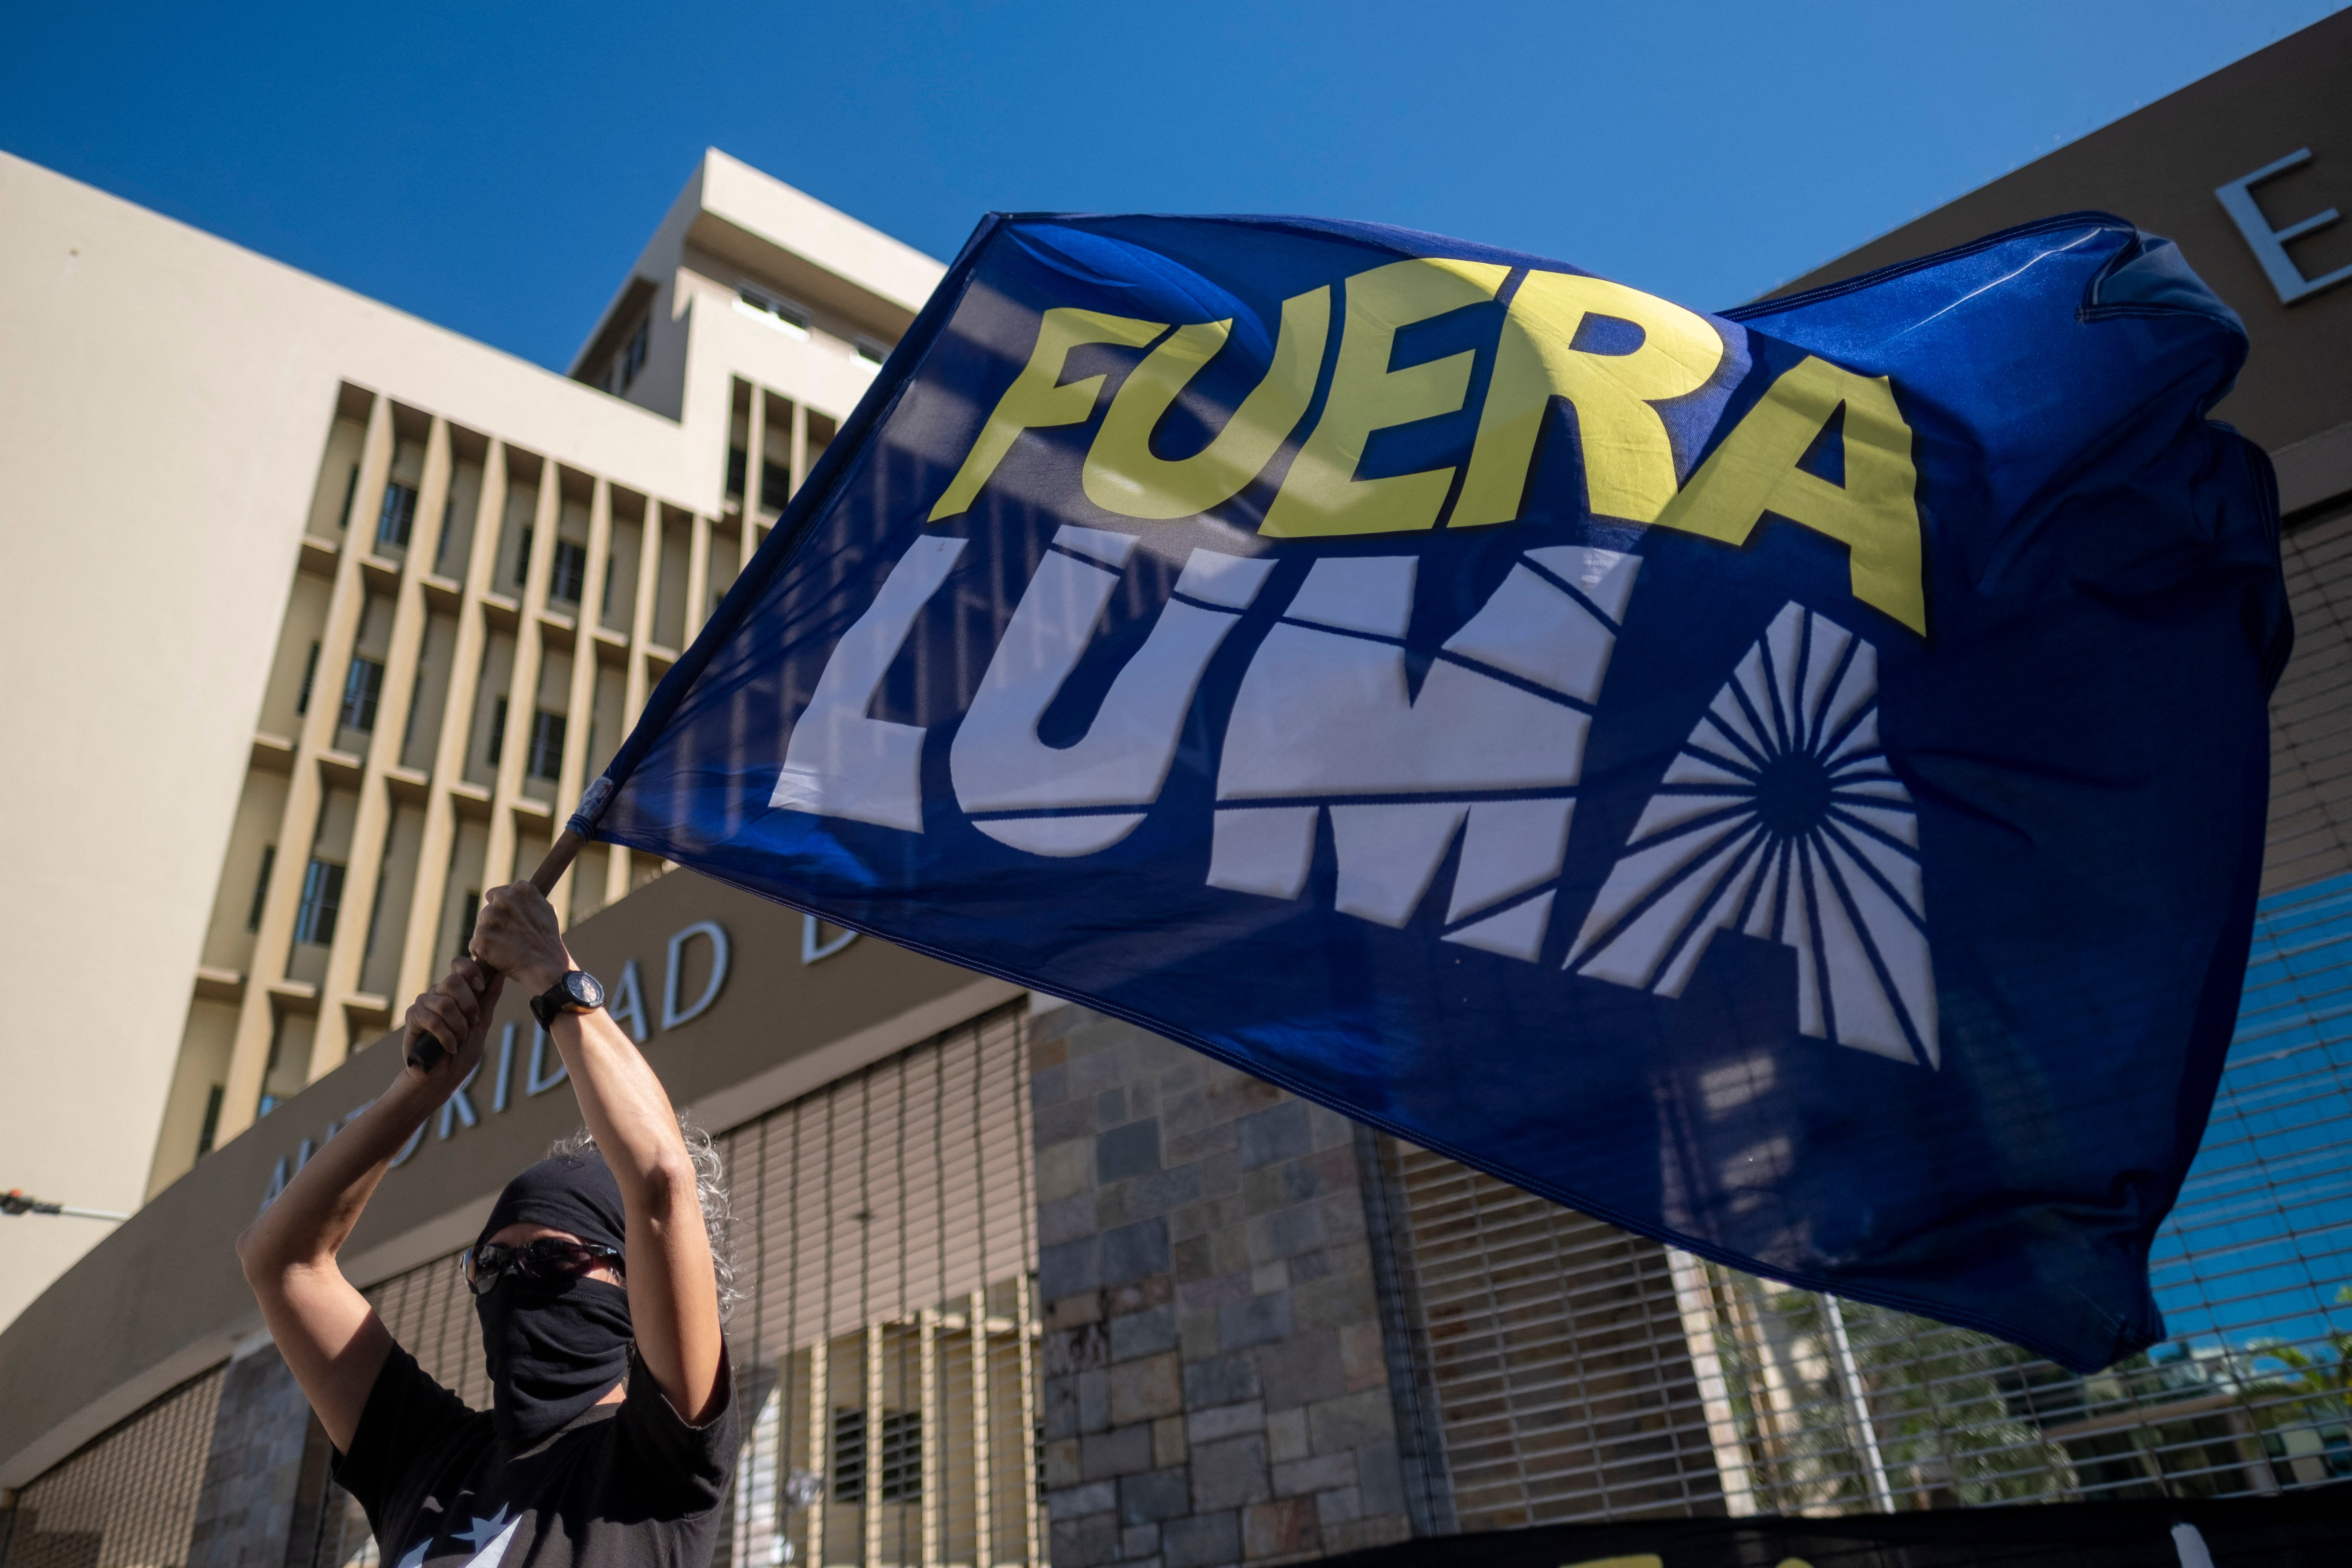 Una mujer agita una bandera en la que se lee “Fuera LUMA” durante una protesta frente a la sede de LUMA Energy